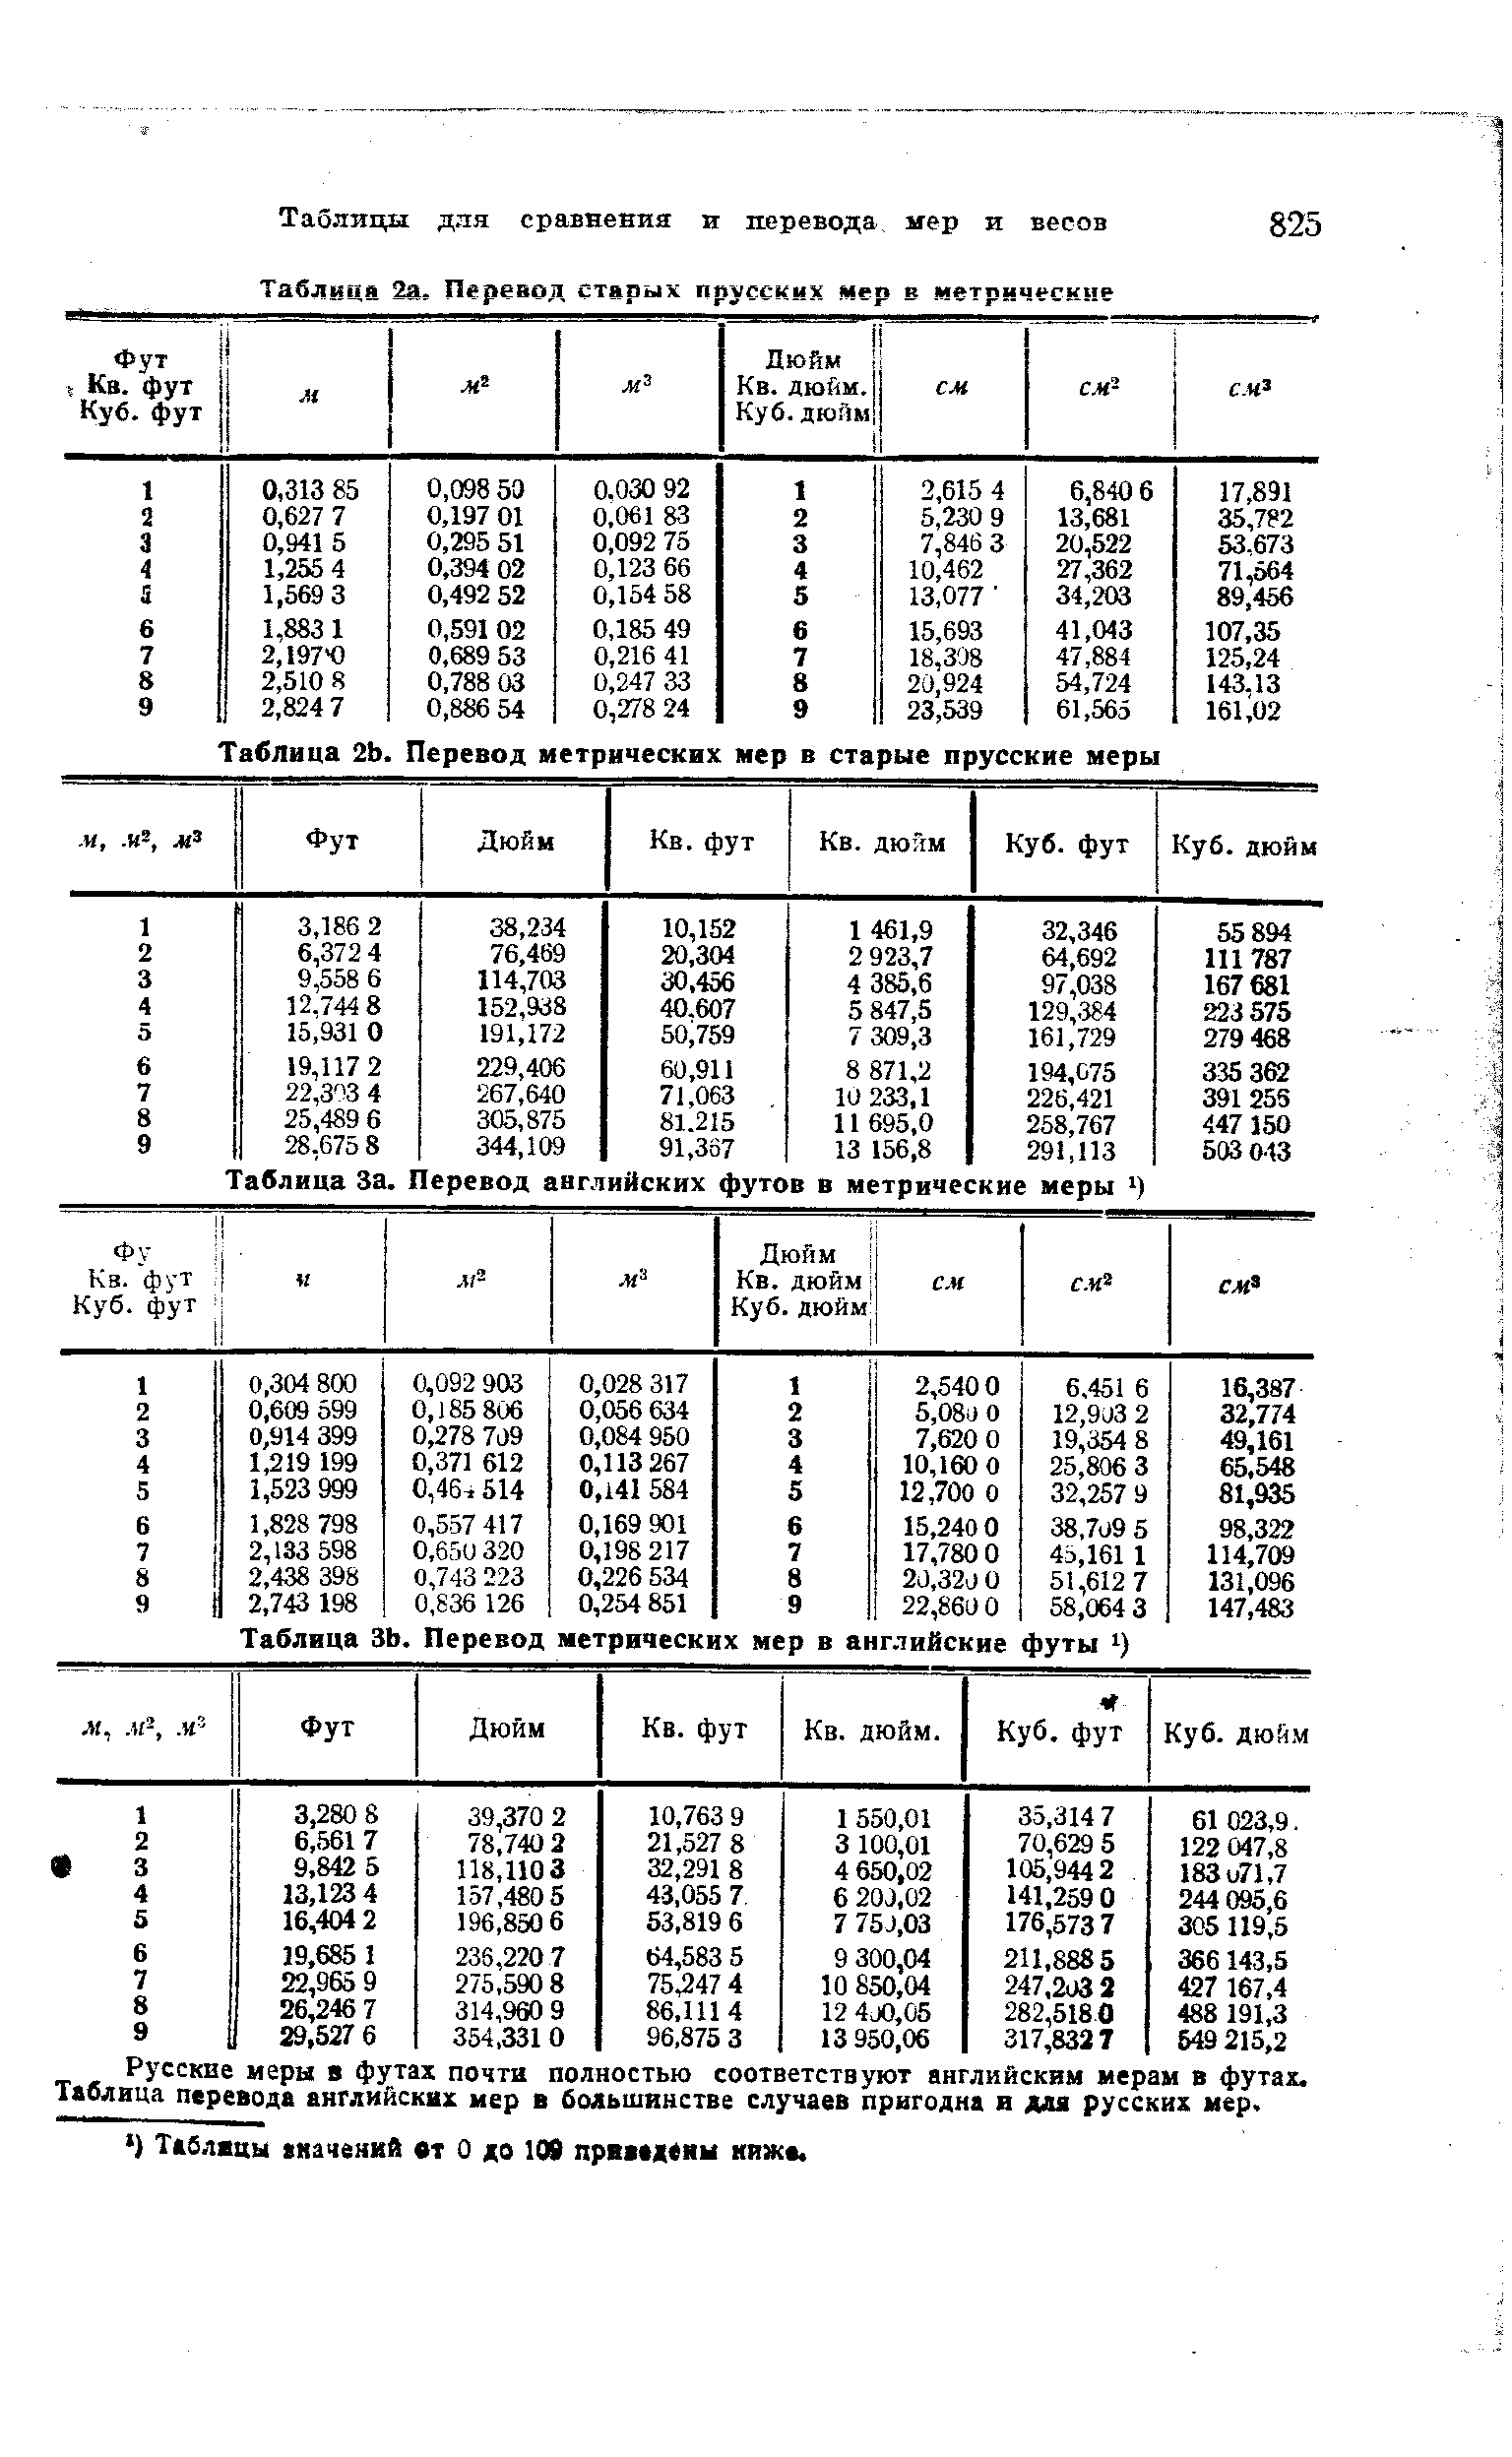 Таблица ЗЬ. Перевод метрических мер в анг.тийские футы
